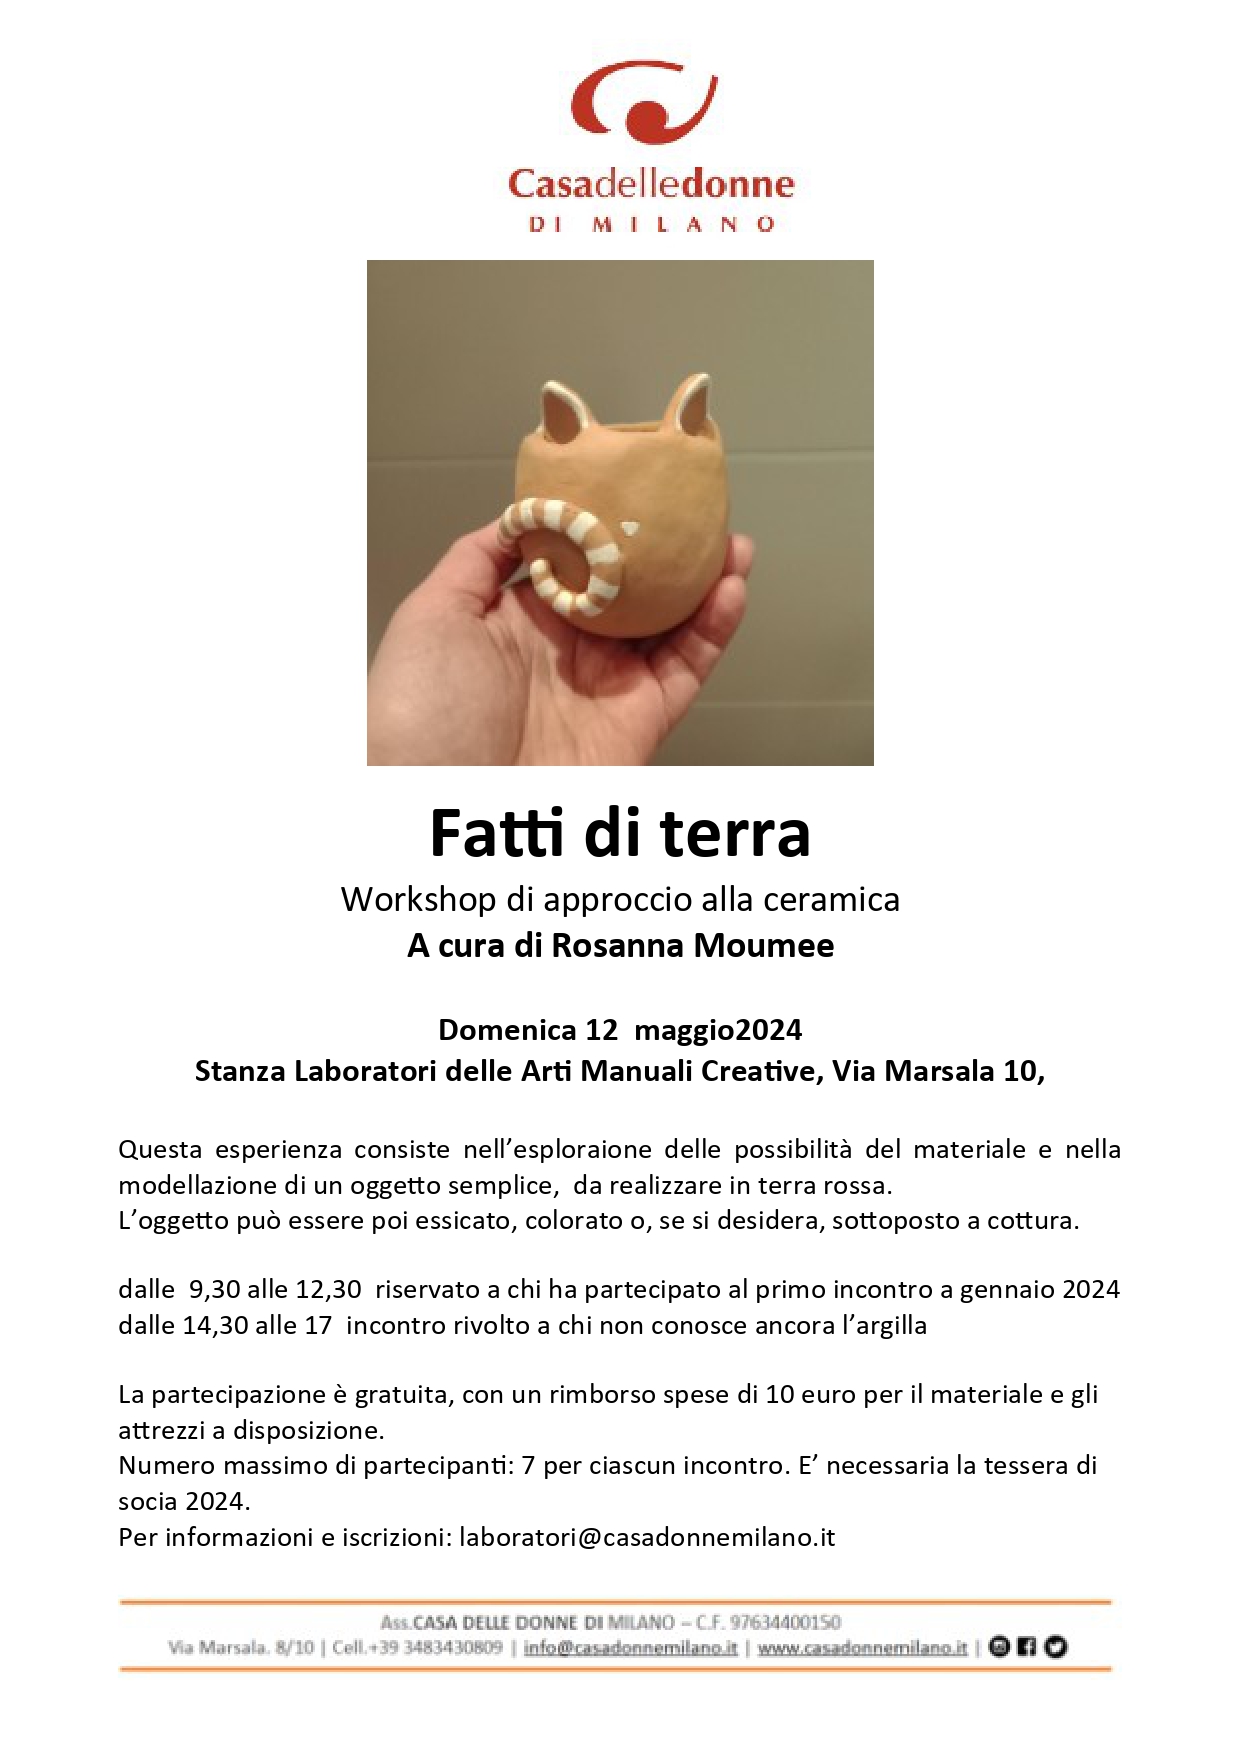 Workshop di approccio alla ceramica: Fatti di terra @ Casa delle Donne di Milano